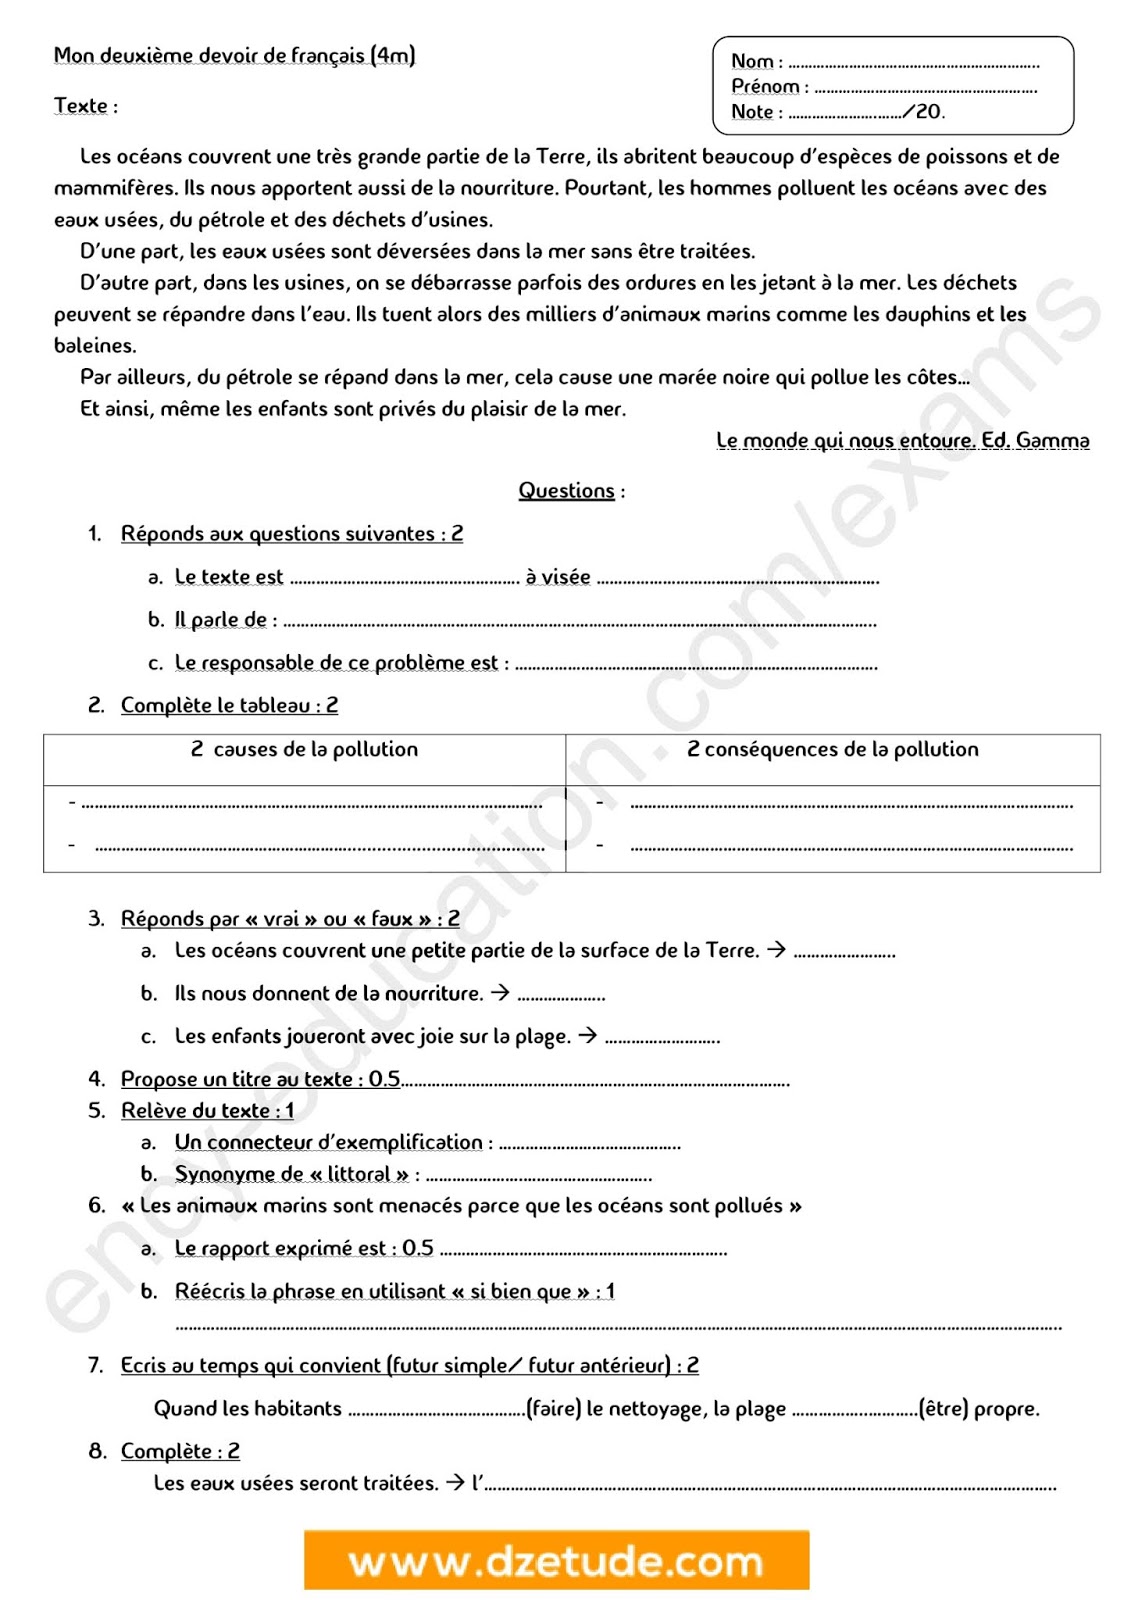 فرض الفصل الأول في اللغة الفرنسية للسنة الرابعة متوسط - الجيل الثاني نموذج 2